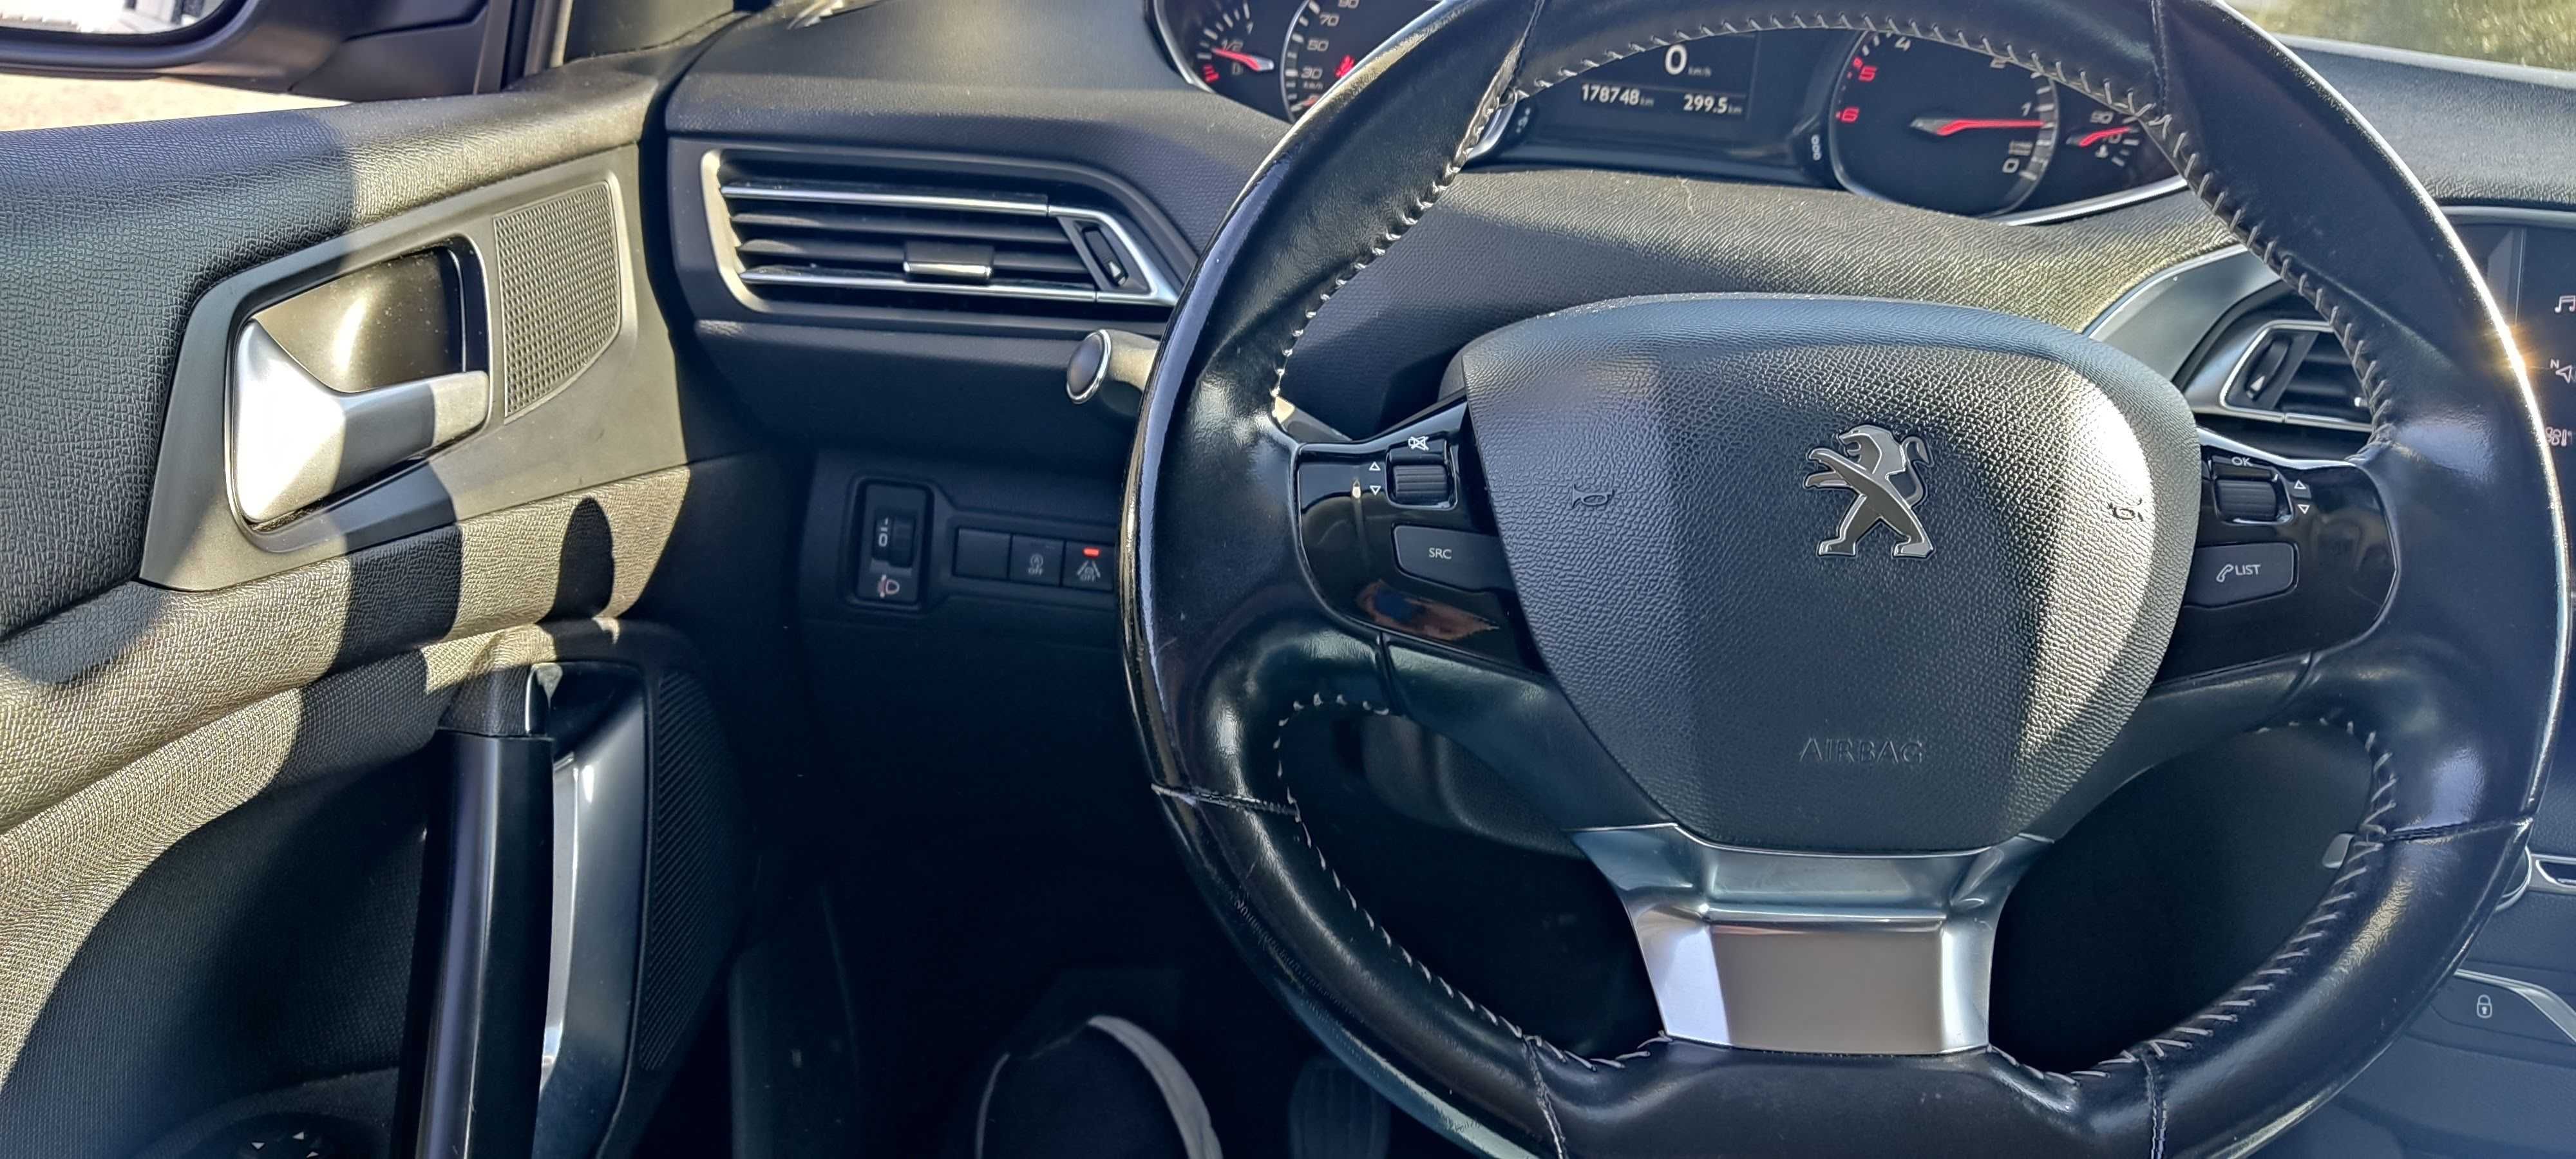 Peugeot 308 HDI ALLURE de 2018 em muito bom estado.